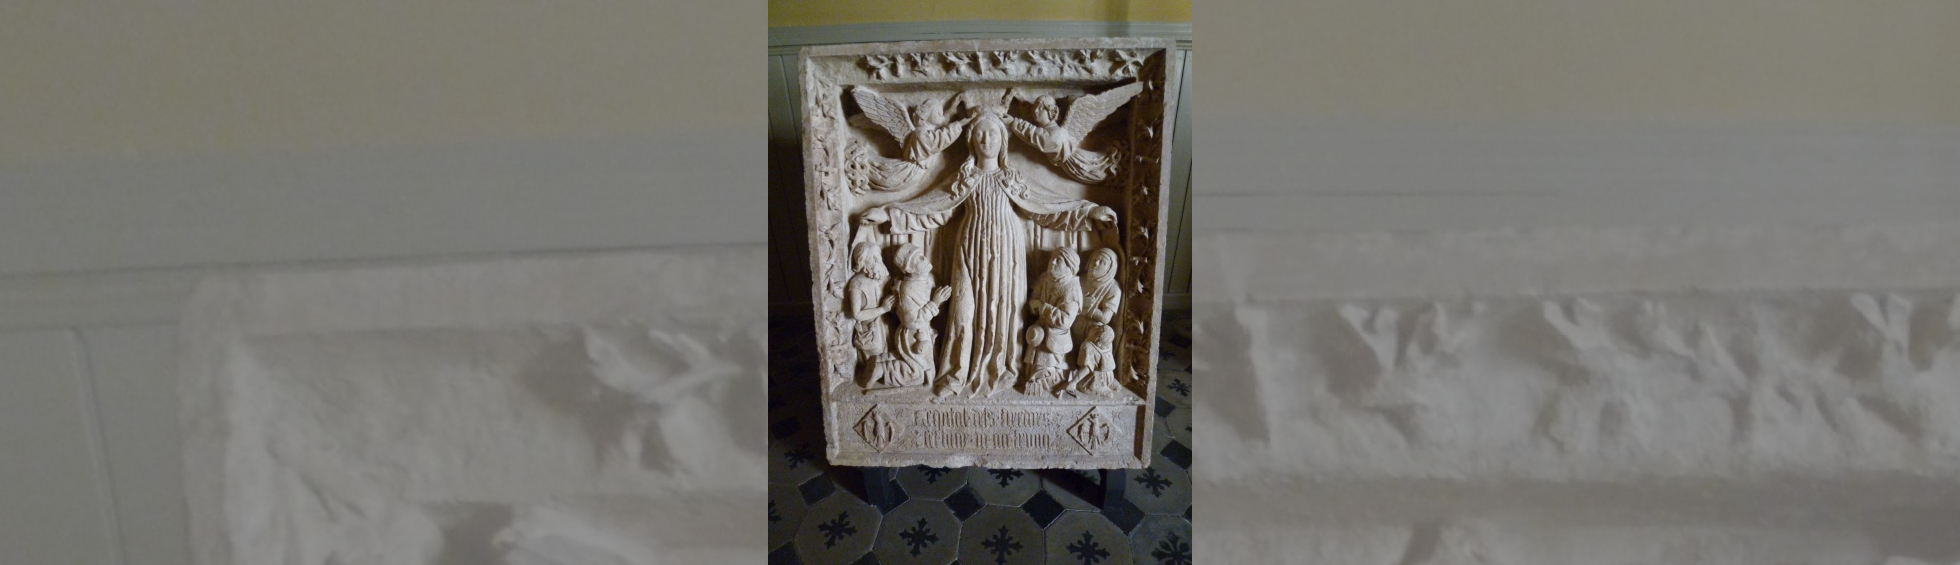 Ce bas relief évoque l'hospice des tisserands(tixadors): une vierge abrite sous son large manteau ouvert les malades agenouillés